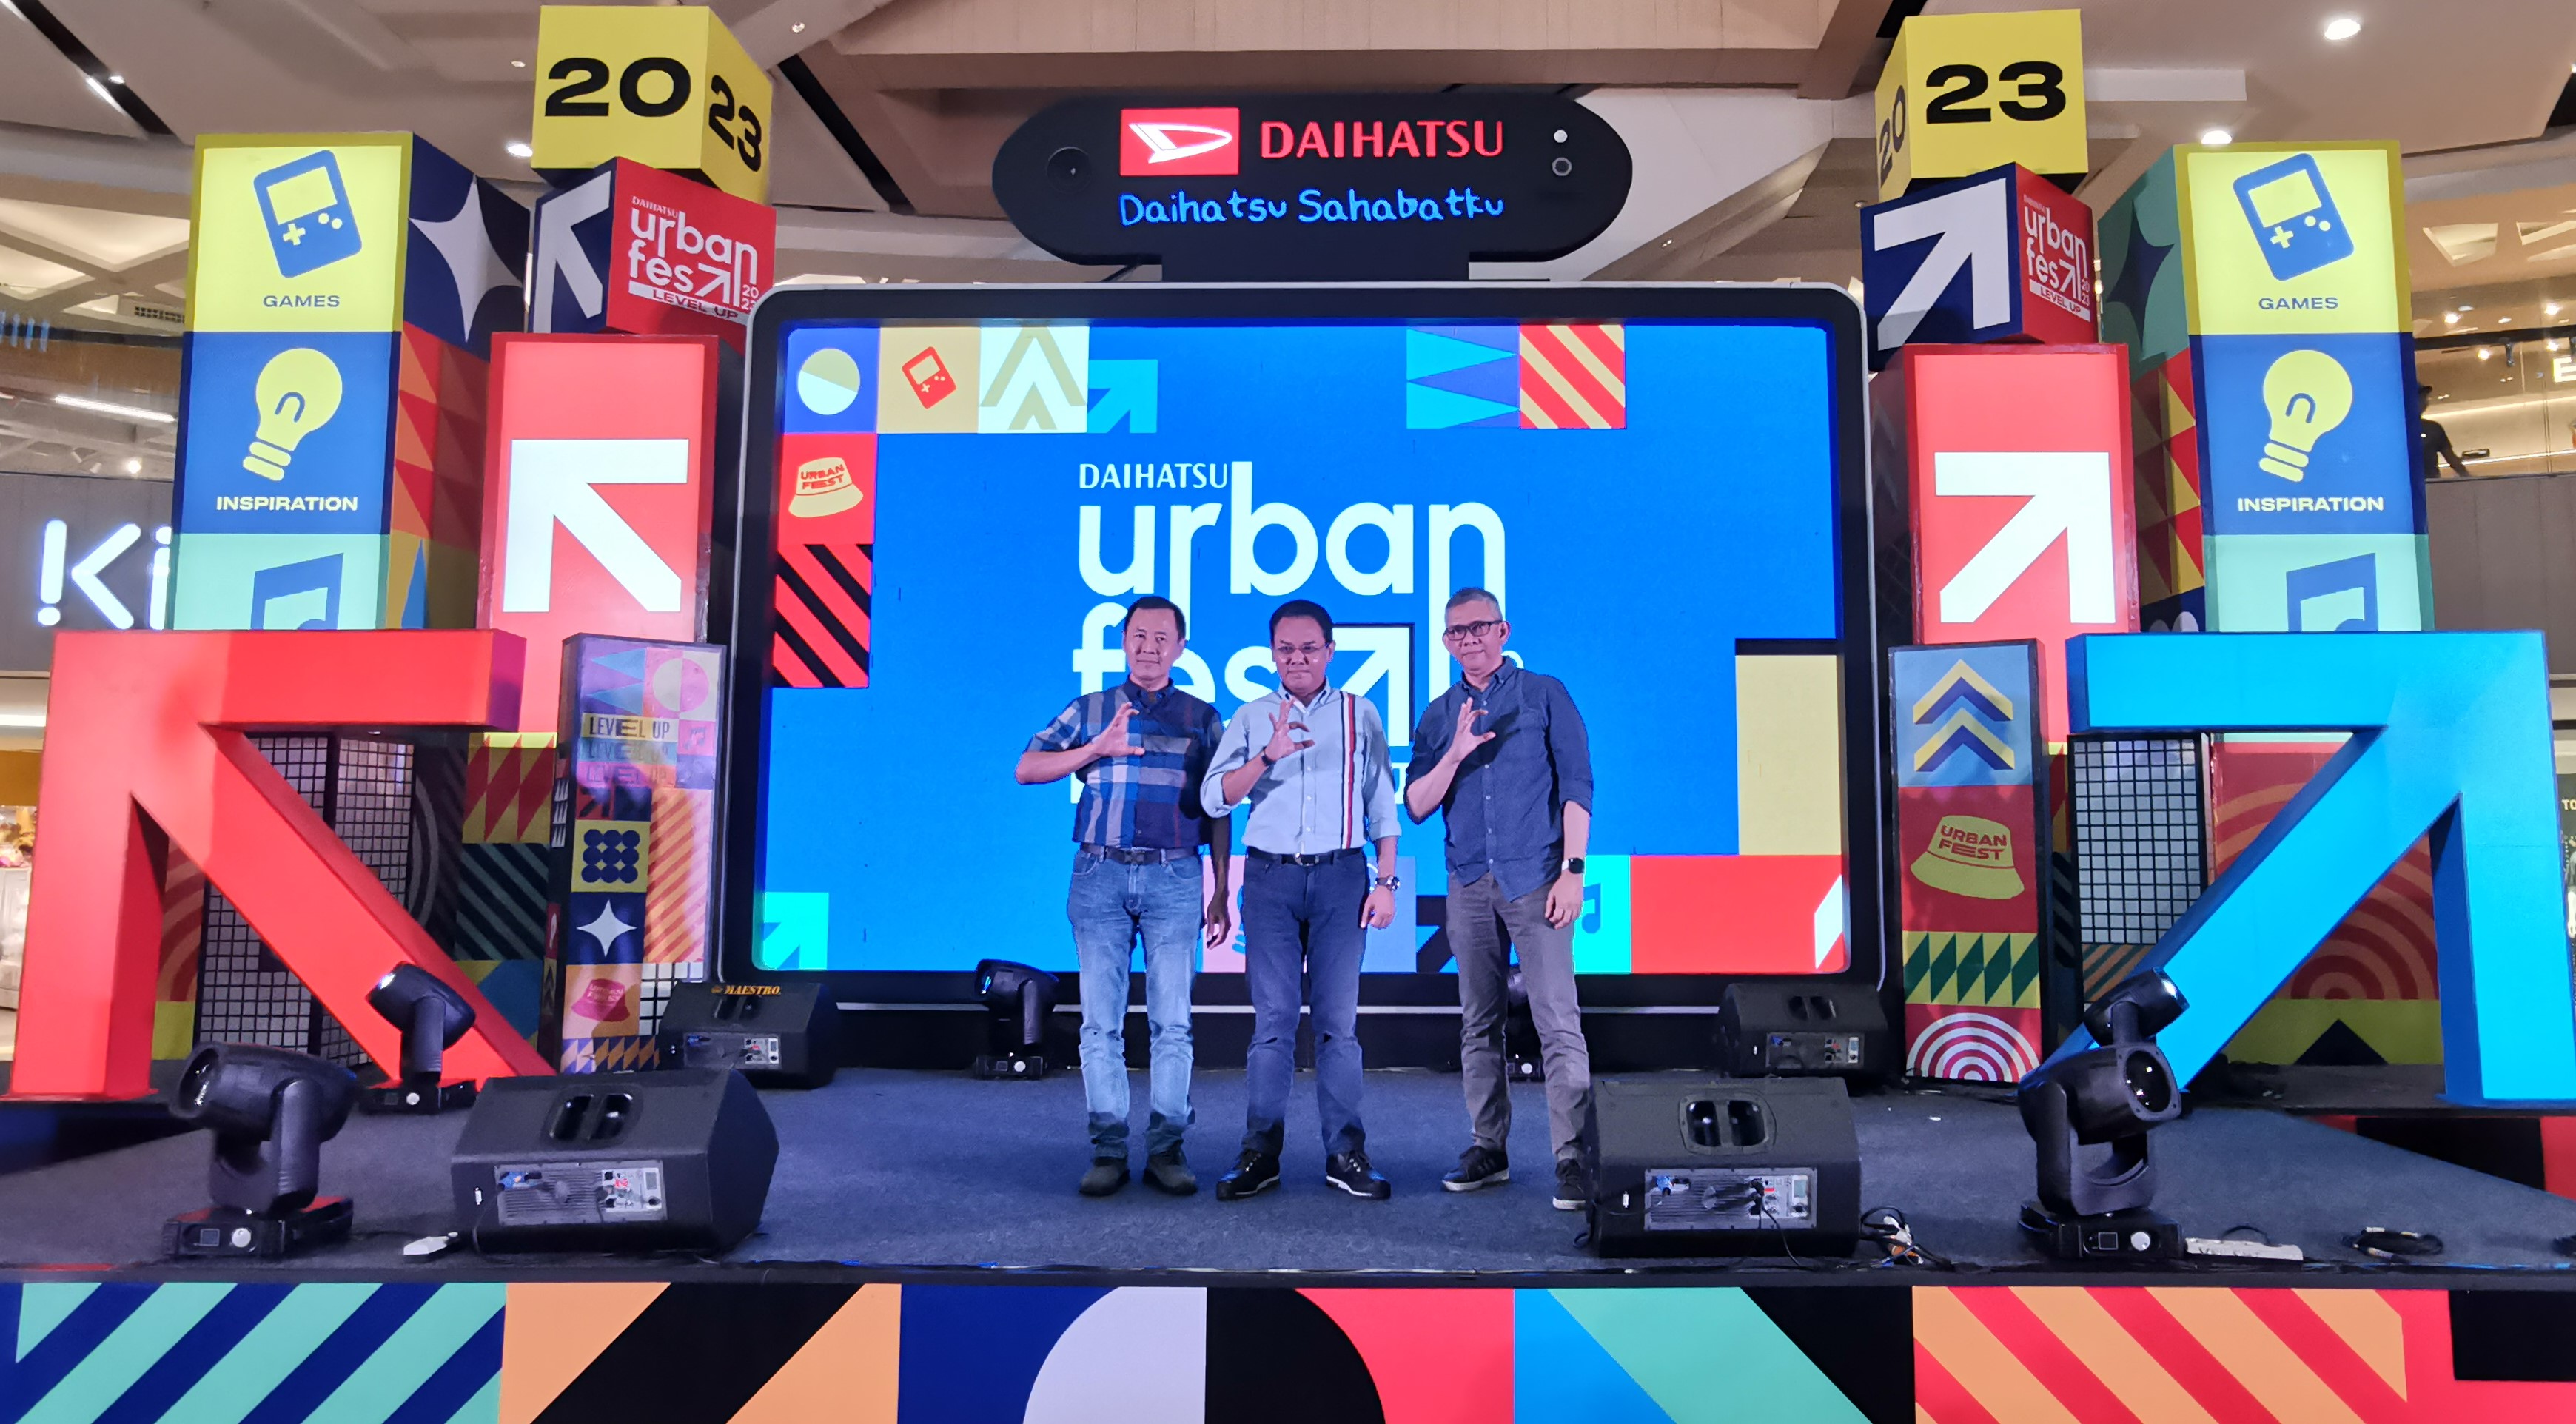 Daihatsu Siap Warnai Akhir Pekan Generasi Muda Lewat Urban Fest di Kota Pahlawan